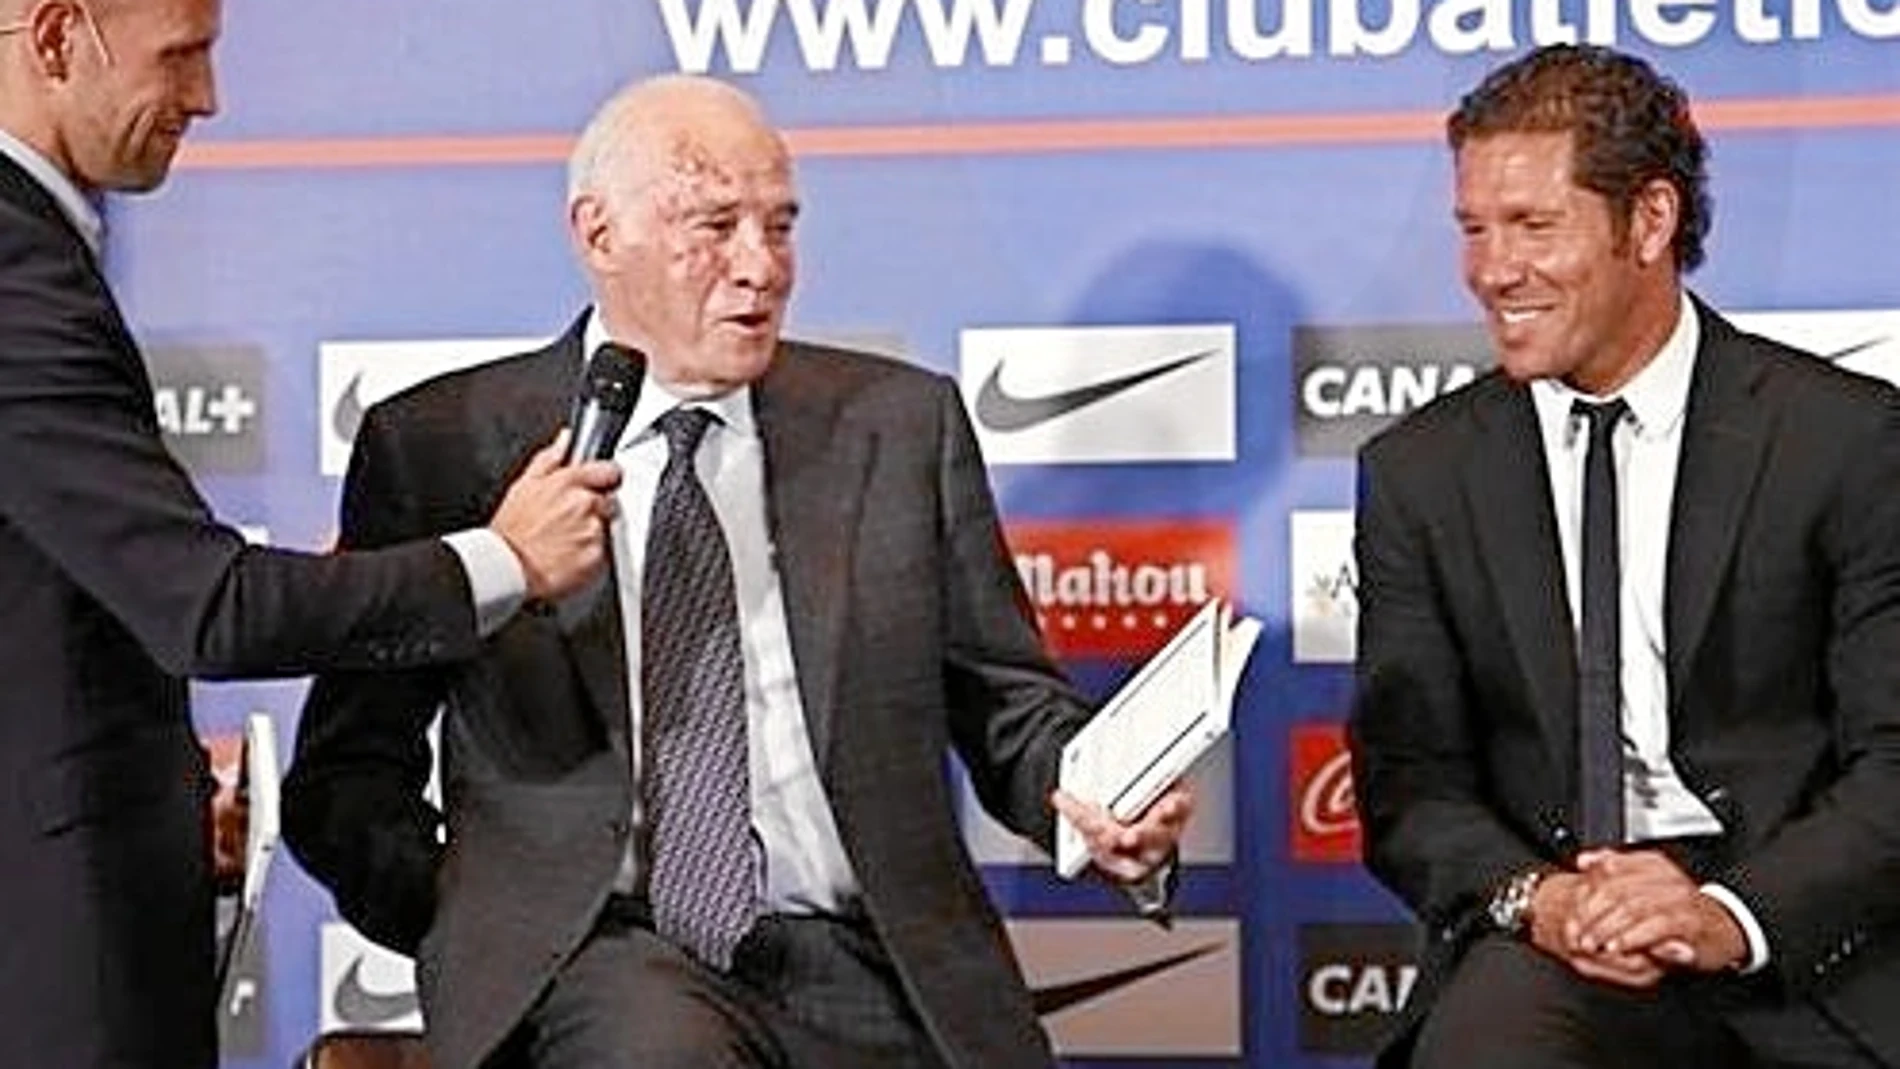 Gonzalo Miró pregunta a Luis Aragonés, y Simeone, a su lado, sonríe ante los elogios del ex seleccionador